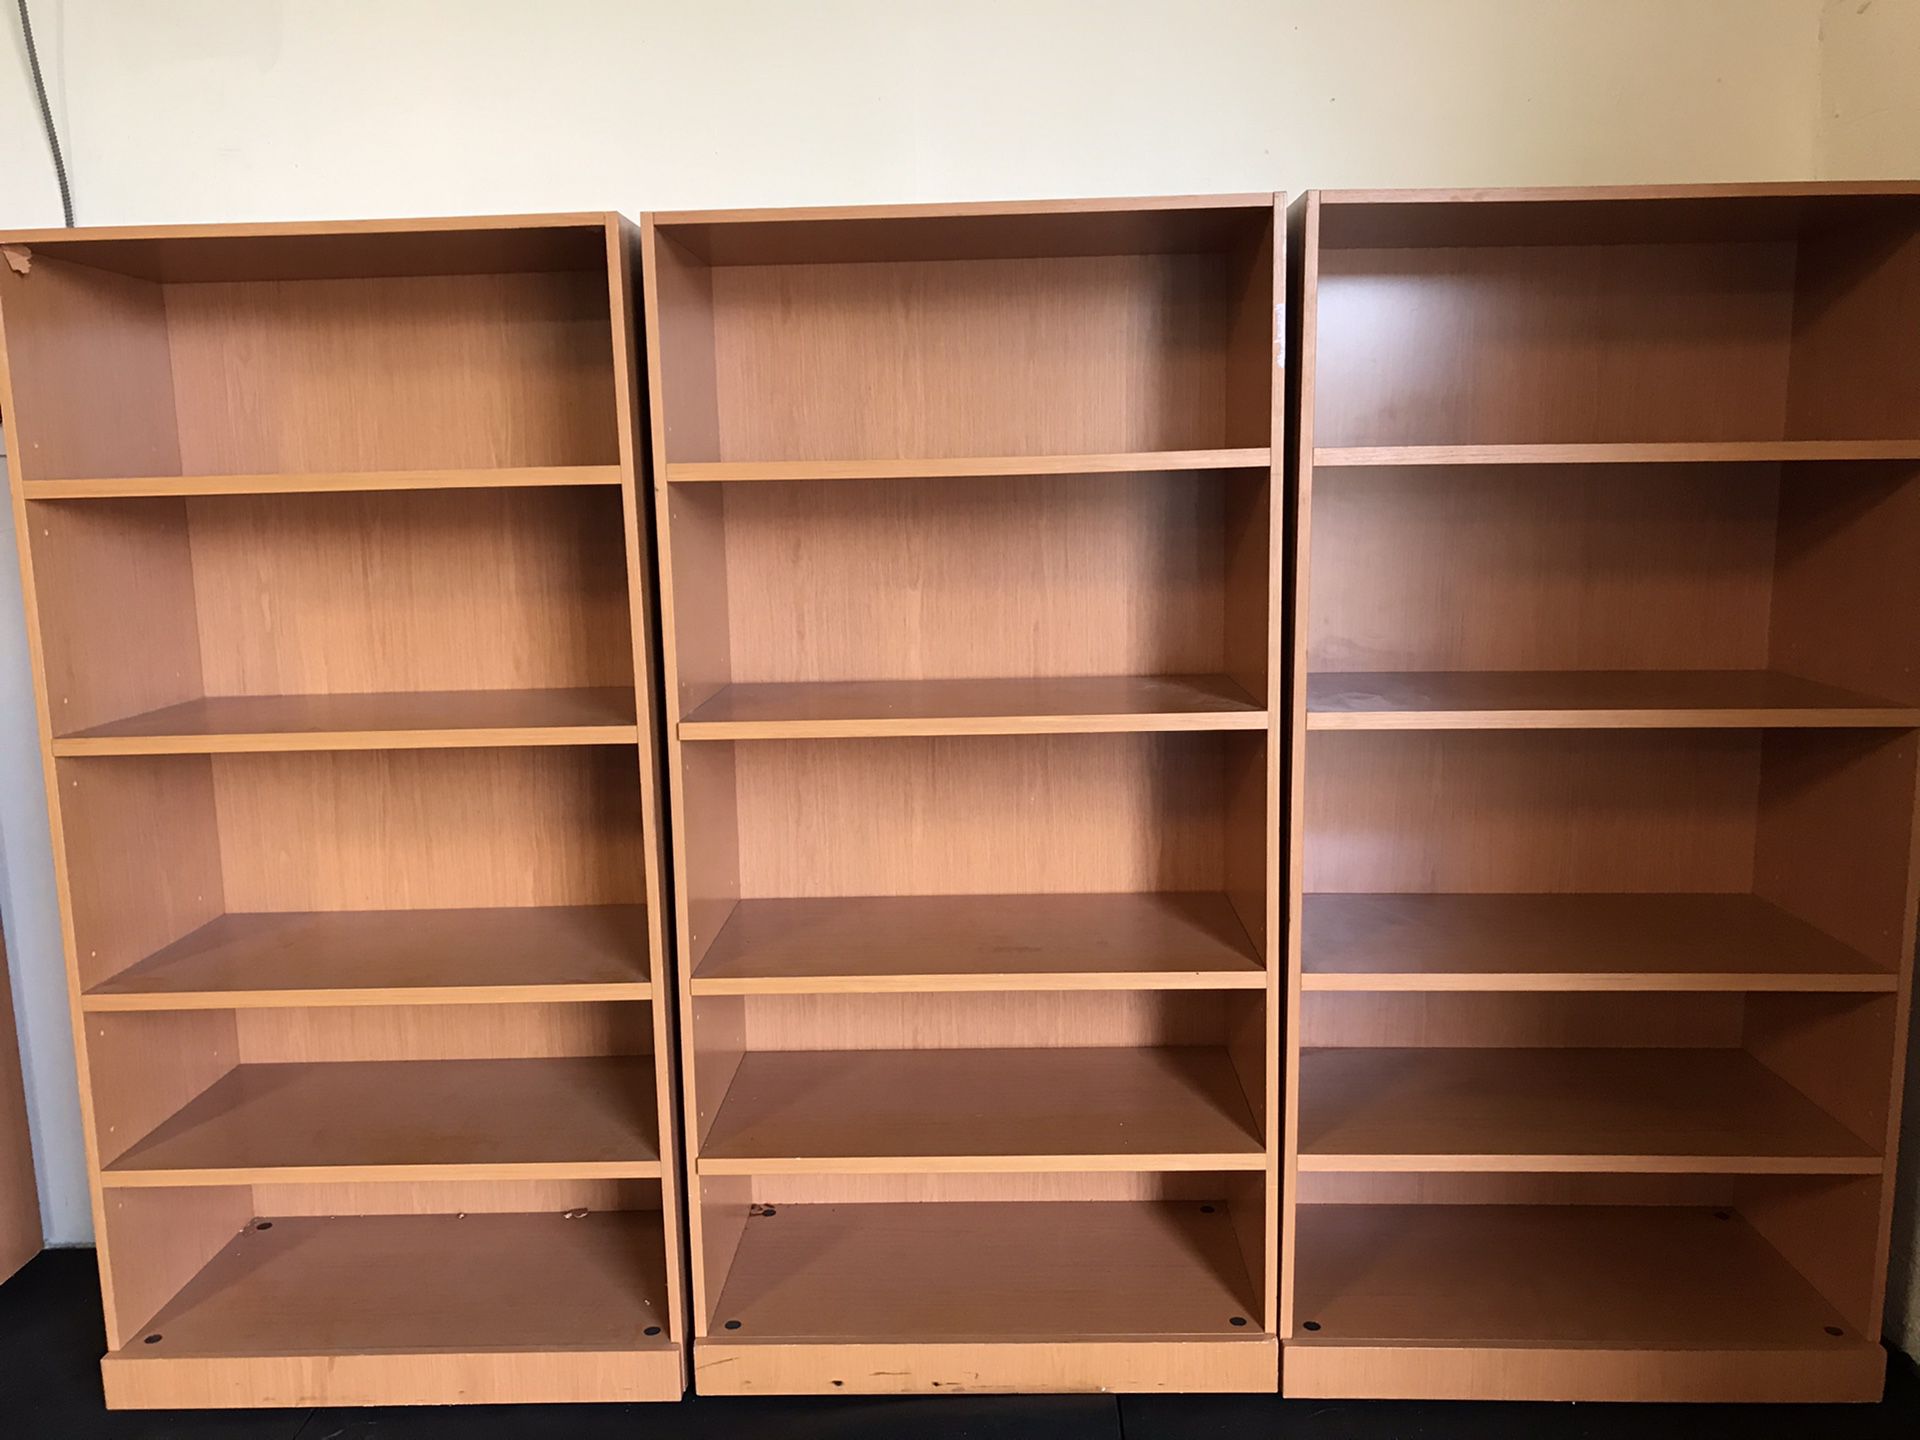 6ft x 3ft x 18in like new adjustable bookshelves